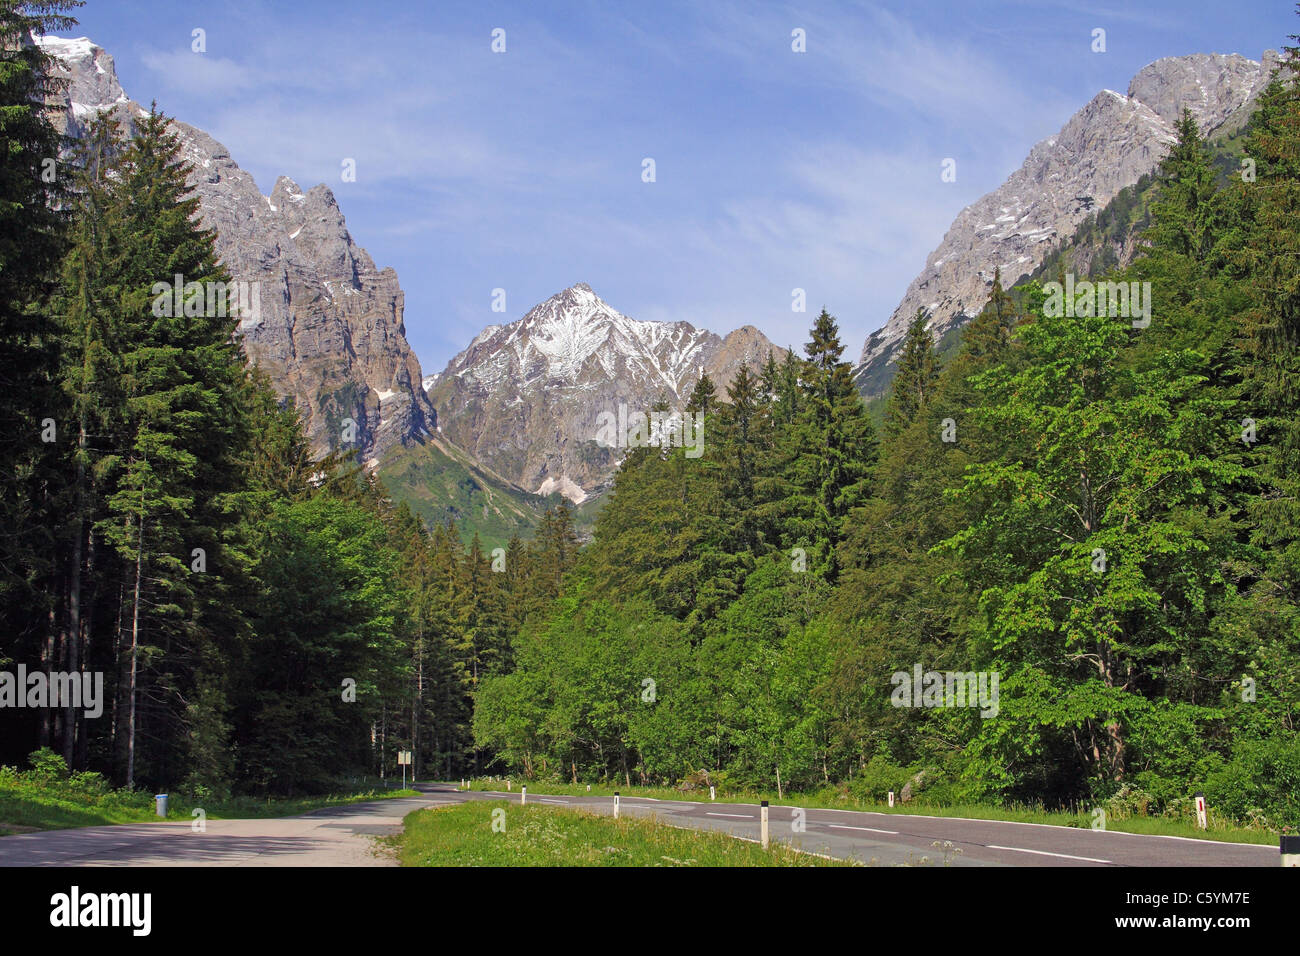 Vue sur les Alpes carniques, Carinthie (Kärnten), Autriche. En direction du sud, vers le col de Pocken et la frontière italienne Banque D'Images